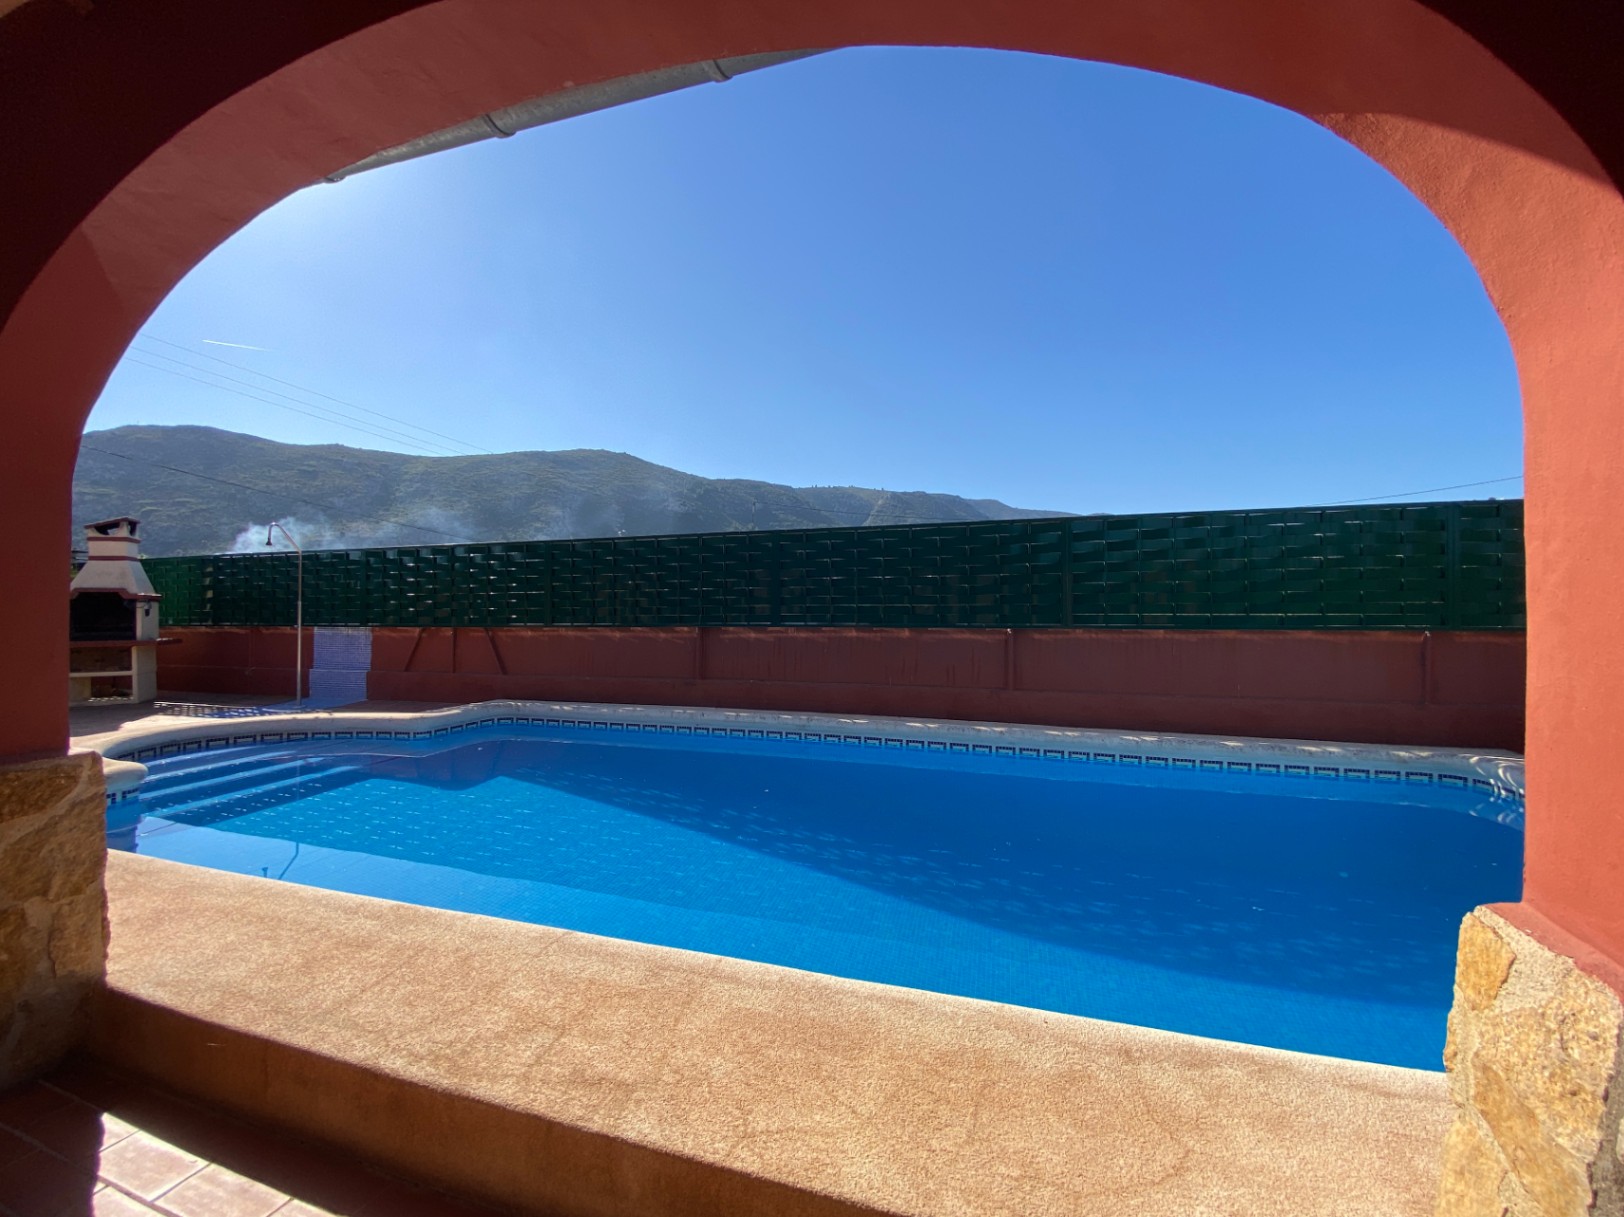 Hermosa finca de estilo español con piscina, BB, garaje, cochera, A/A, cerca de la ciudad.